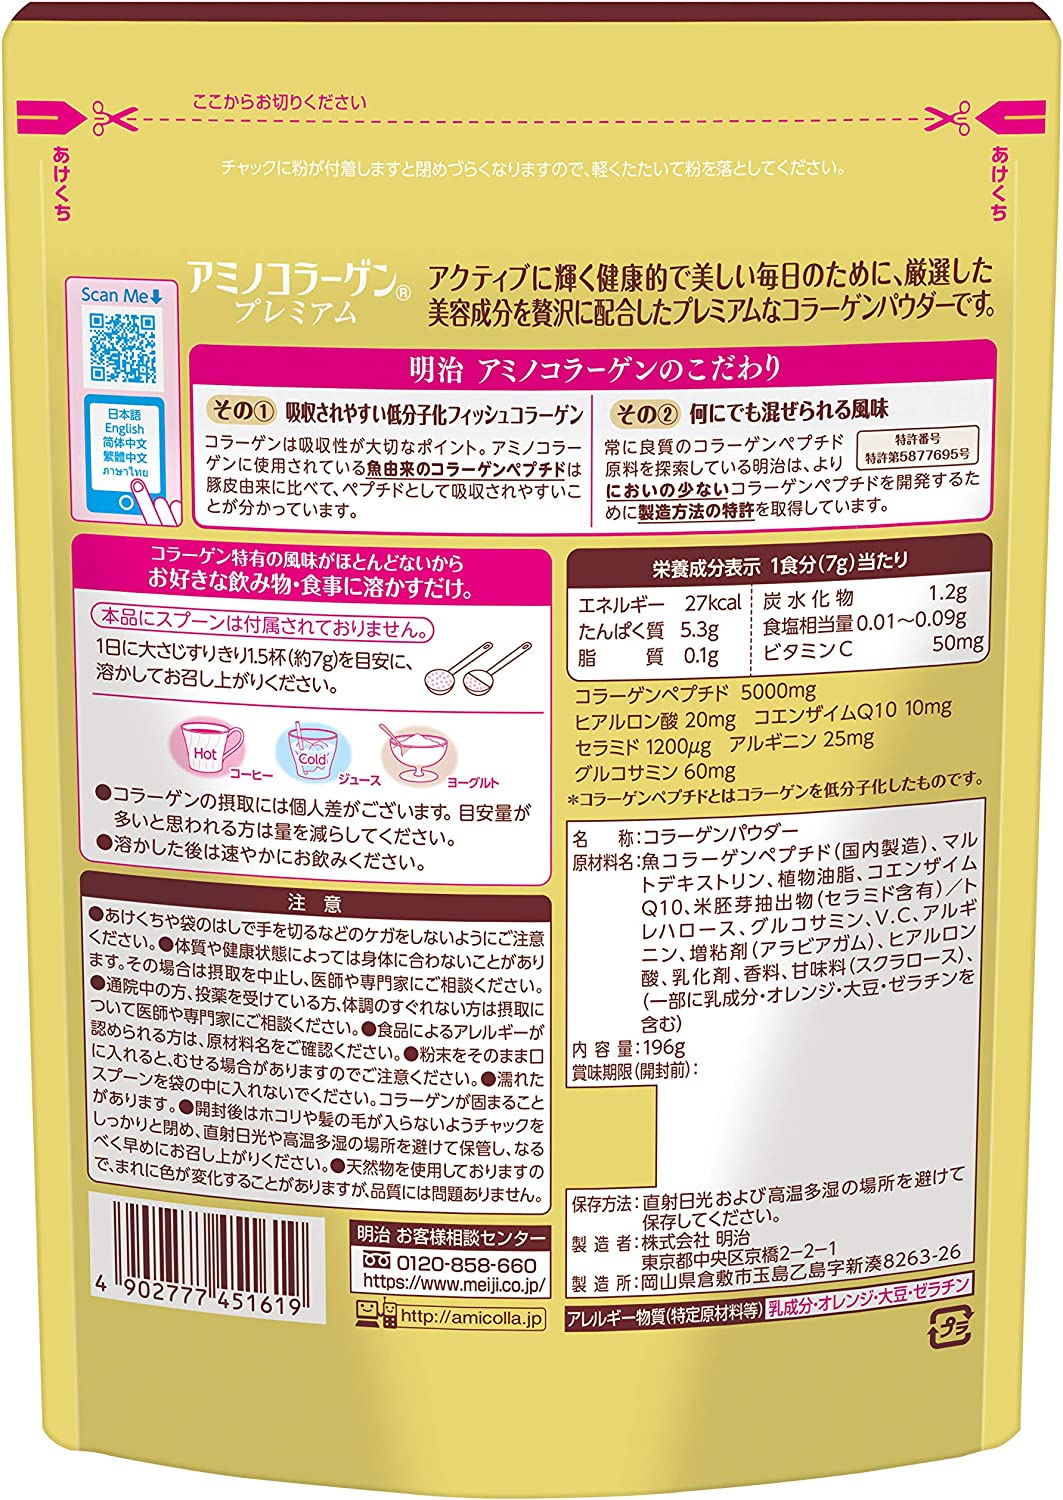 Амино коллаген c Гиалуроновой кислотой и Коэнзимом Q10 Meiji Premium в порошке